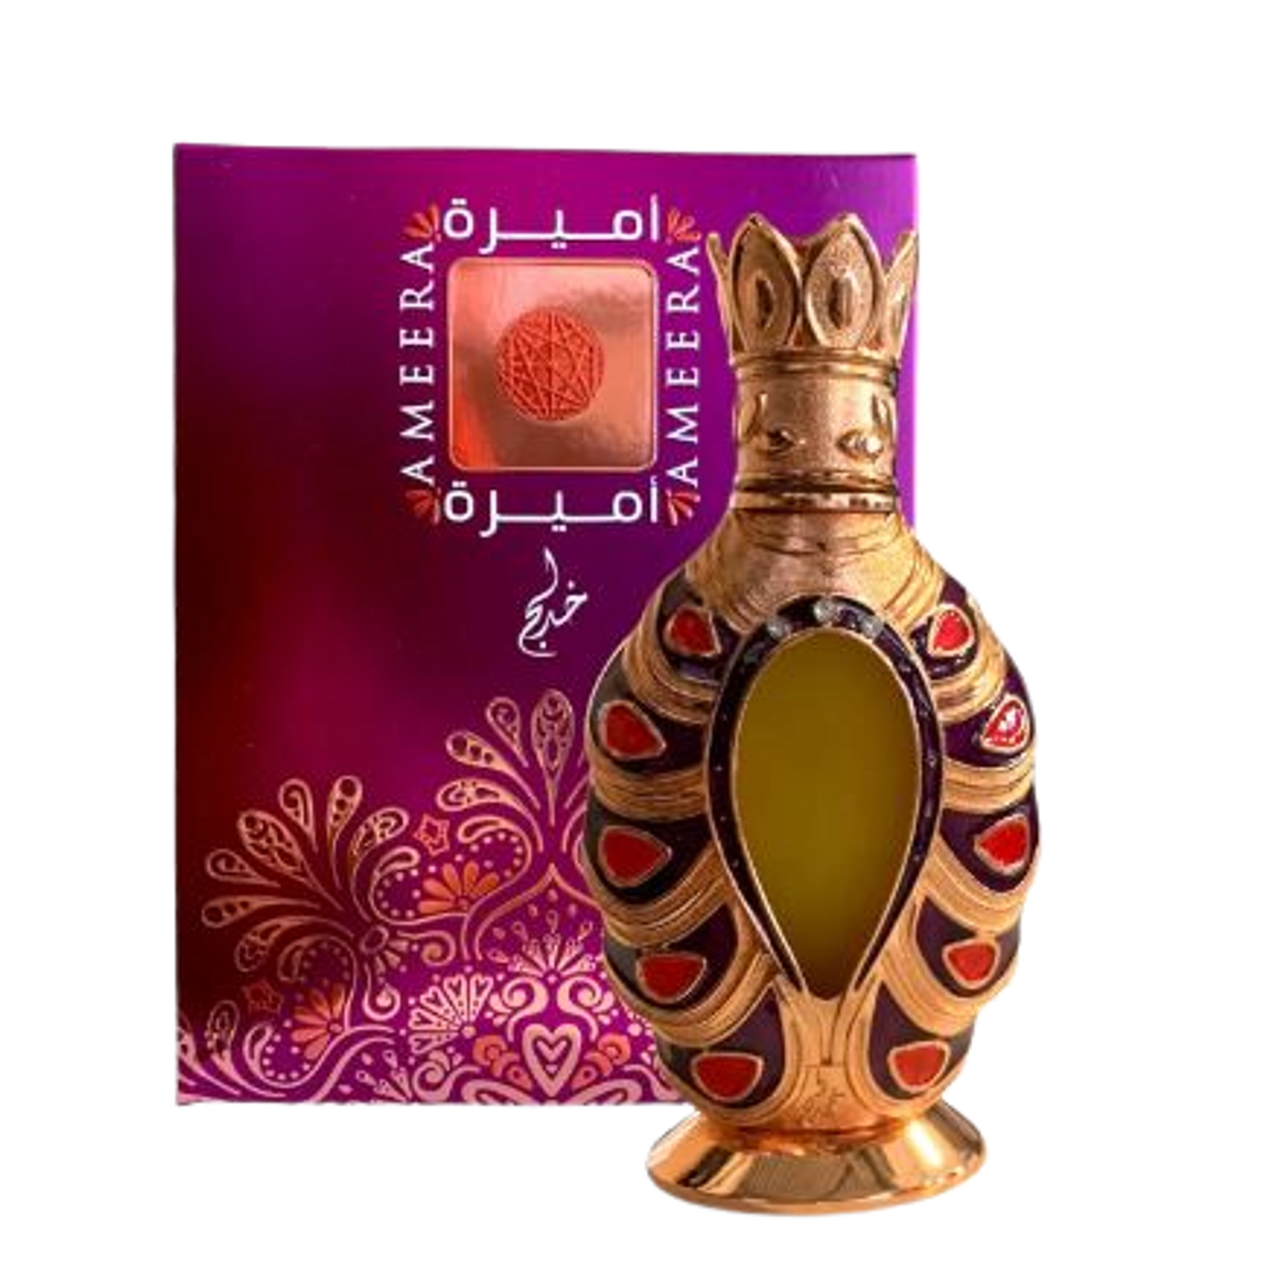 Ameera CPO (18ml) fragrance oil by Khadlaj | Khan El Khalili